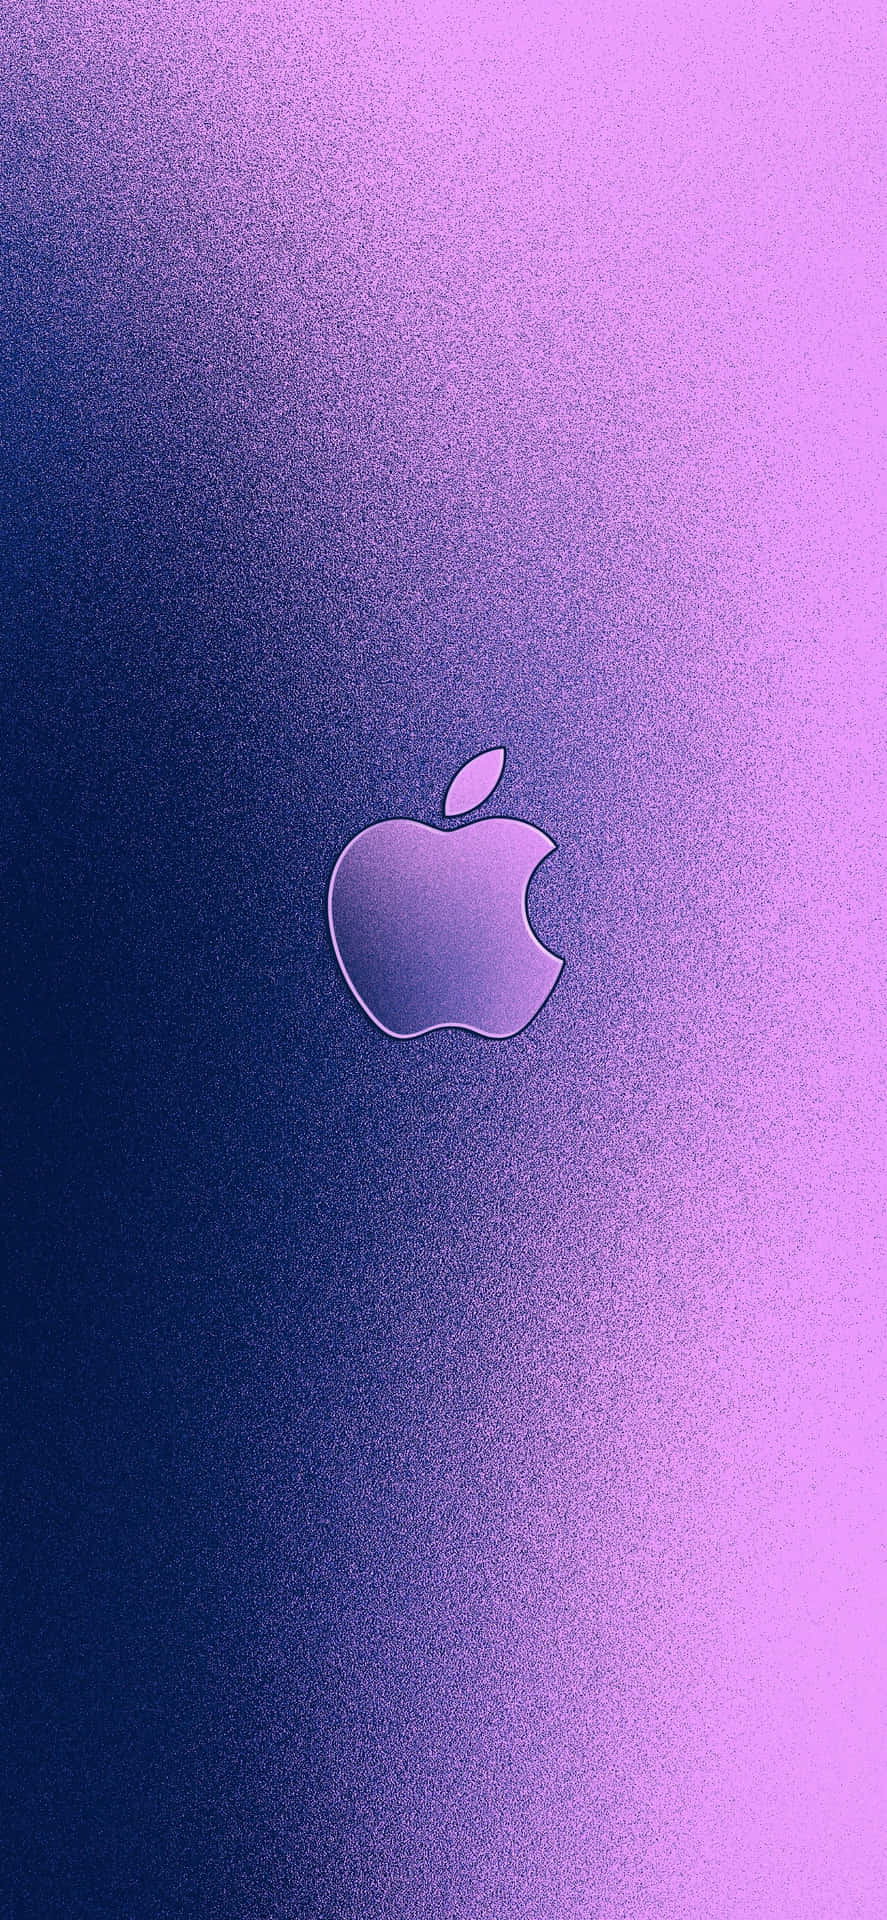 Eindetaillierter Blick Auf Das Apple-logo Auf Einem Iphone X Wallpaper